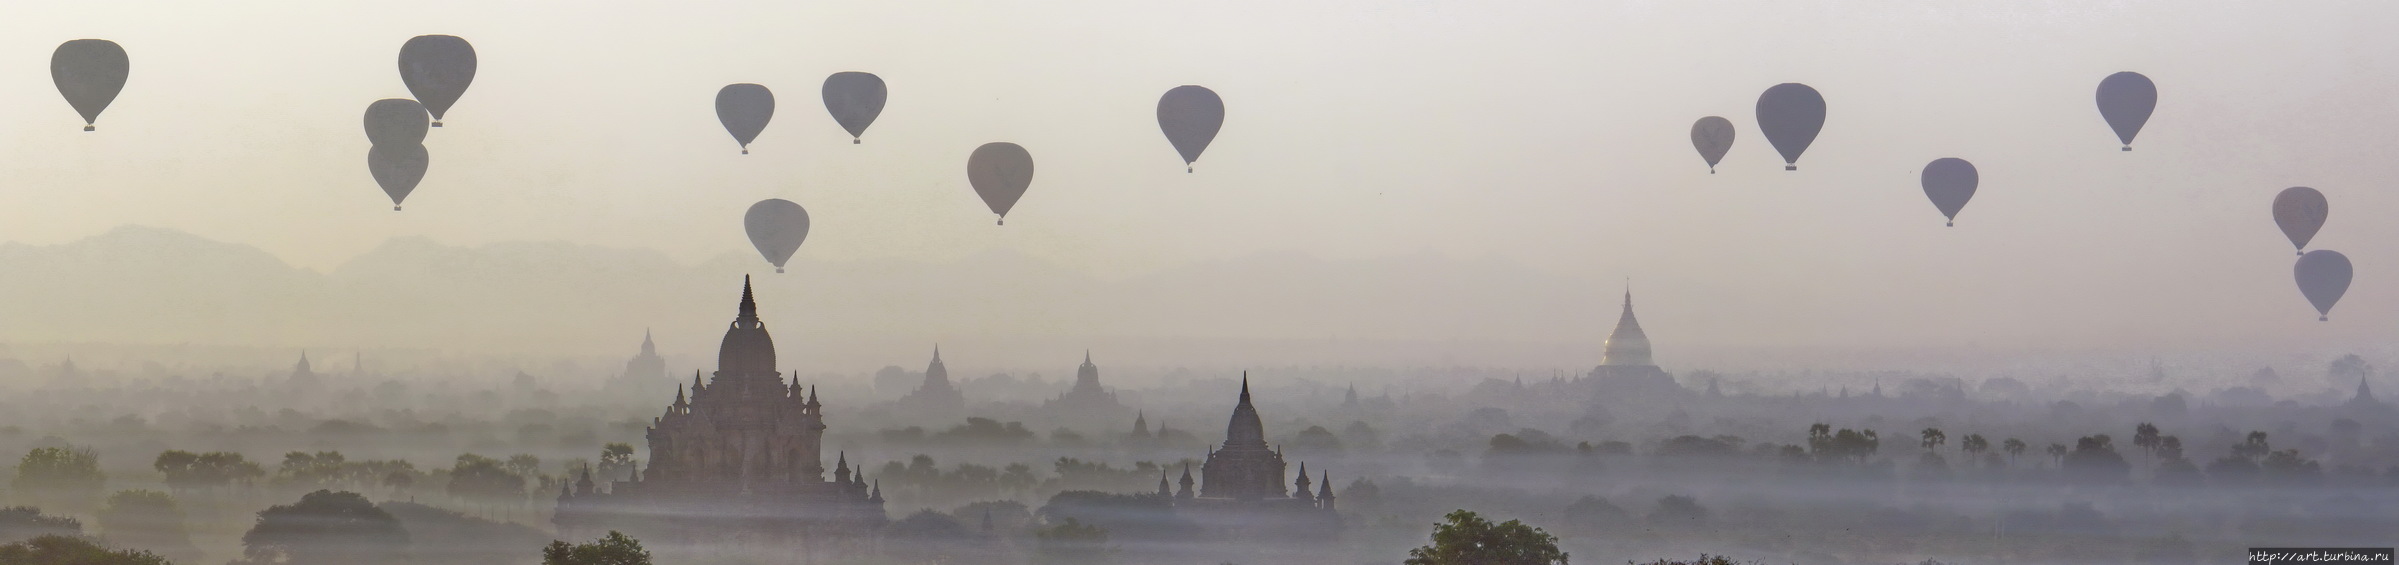 и пролетающие мимо воздушные шары... Баган, Мьянма